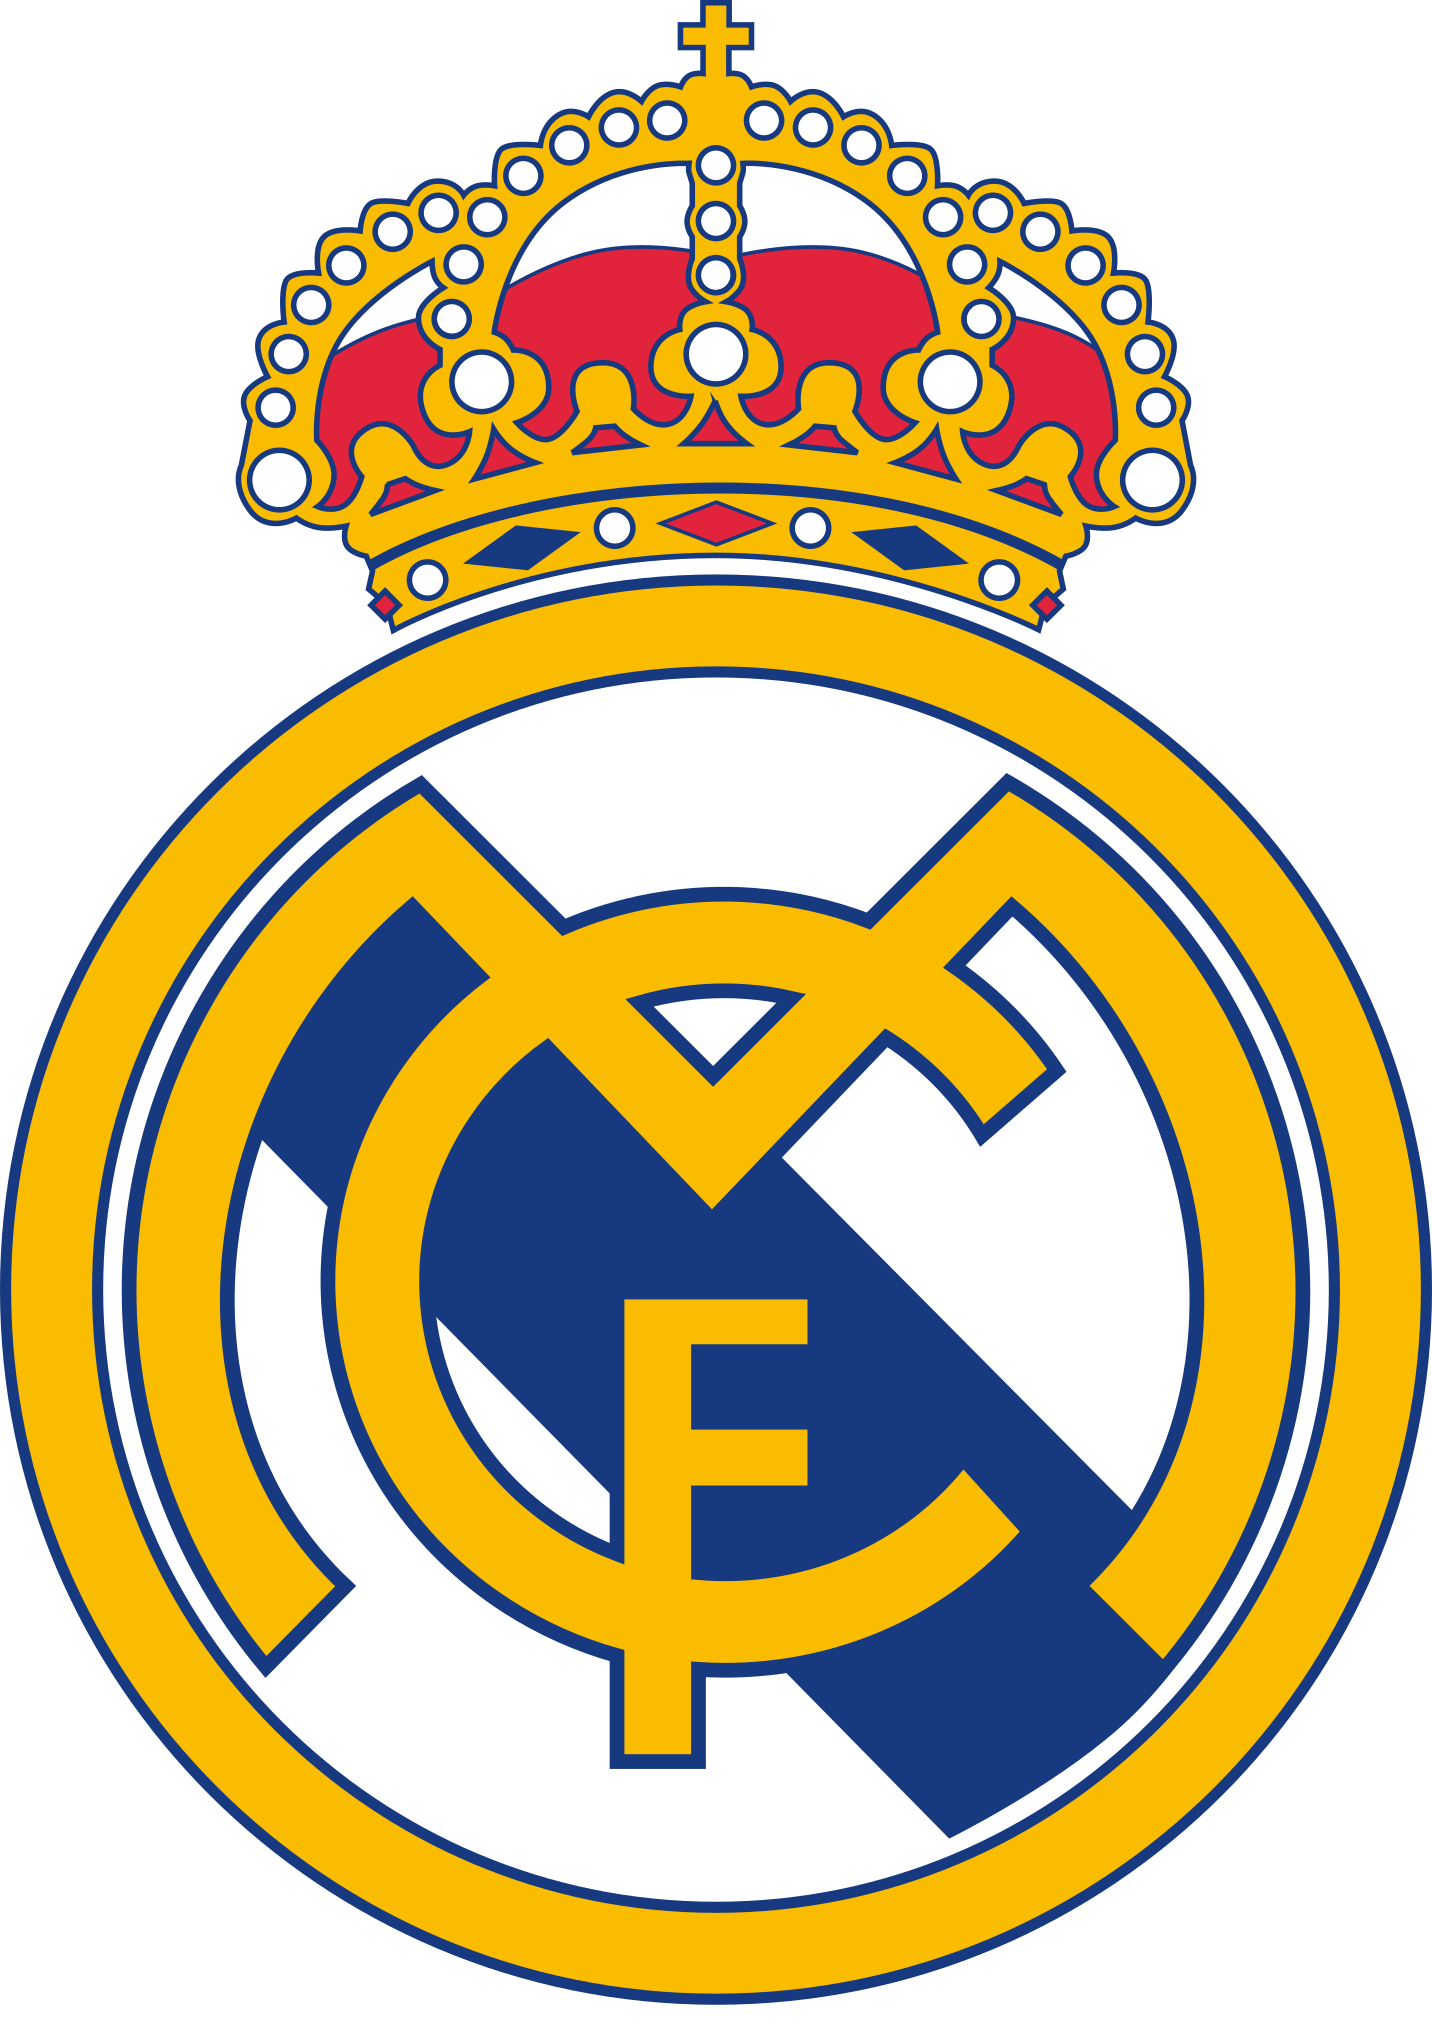 Logo Real Madrid không chỉ là biểu tượng của một đội bóng đá hàng đầu, mà còn là một biểu tượng của sức mạnh, tinh thần đồng đội và niềm tự hào. Hãy cùng xem những hình ảnh liên quan đến Logo Real Madrid để tận hưởng không khí đầy tích cực và đầy cảm xúc của bộ môn thể thao vua này.